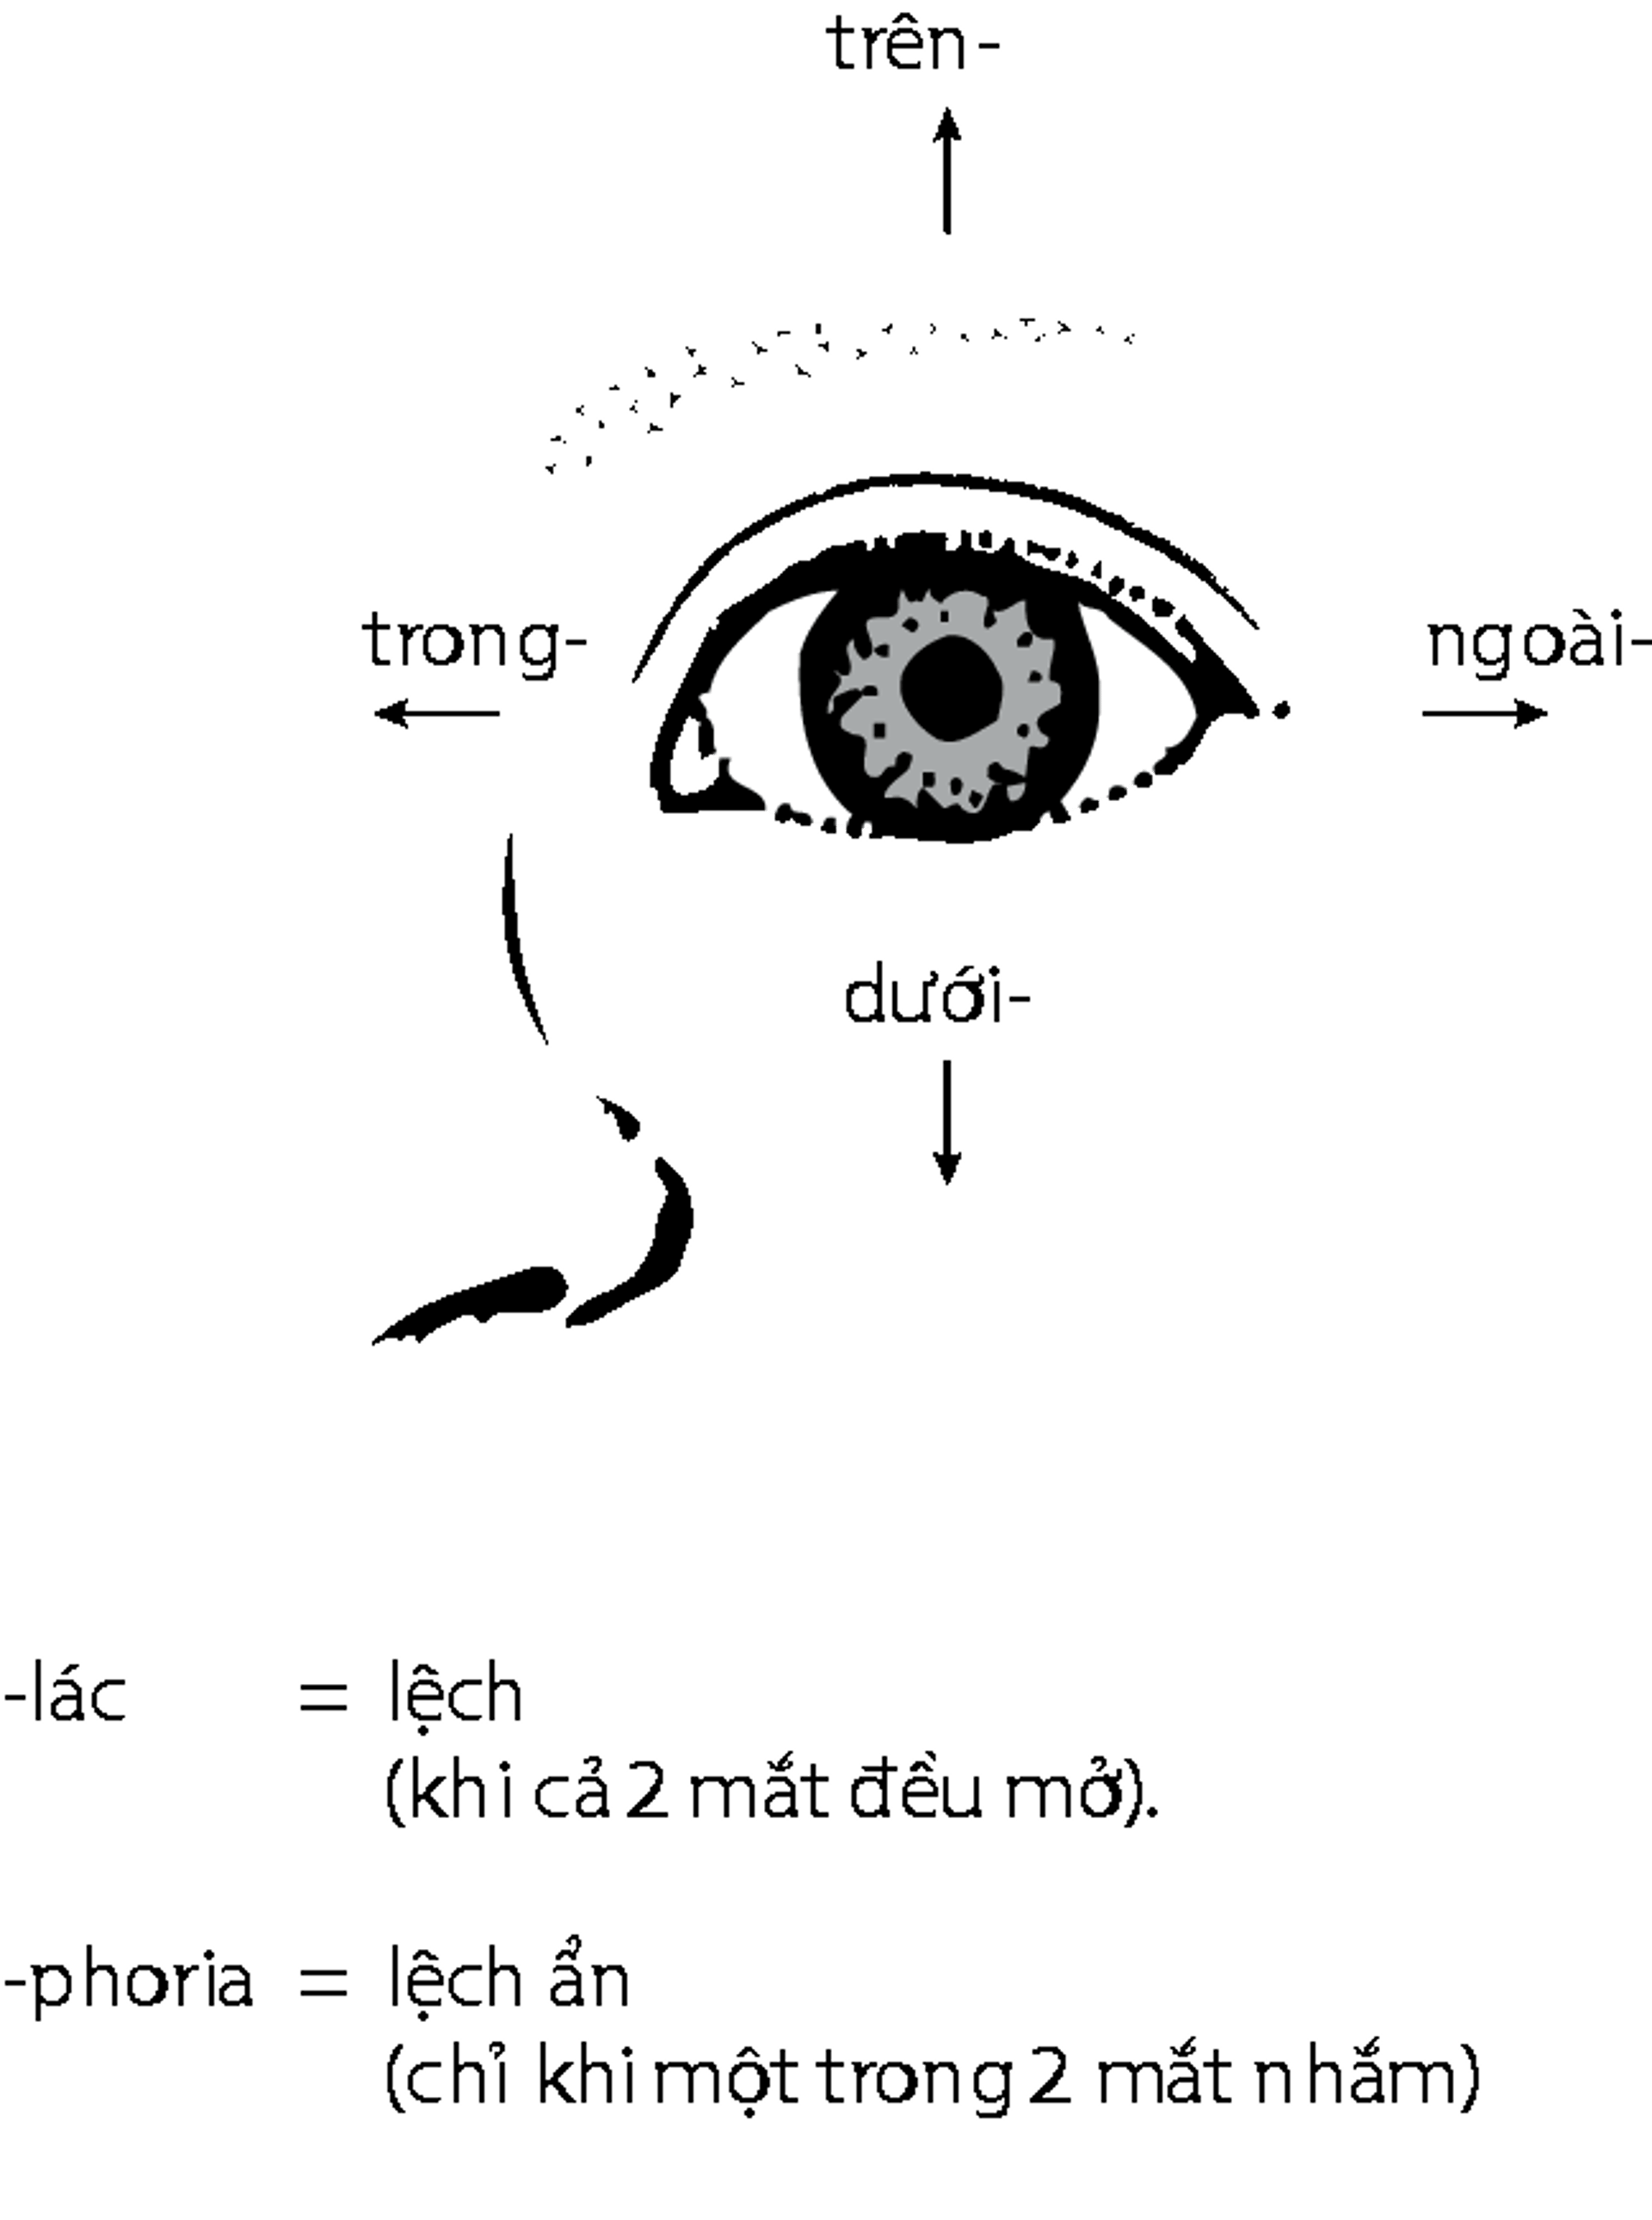 Sự lệch trục mắt trong mắt lác